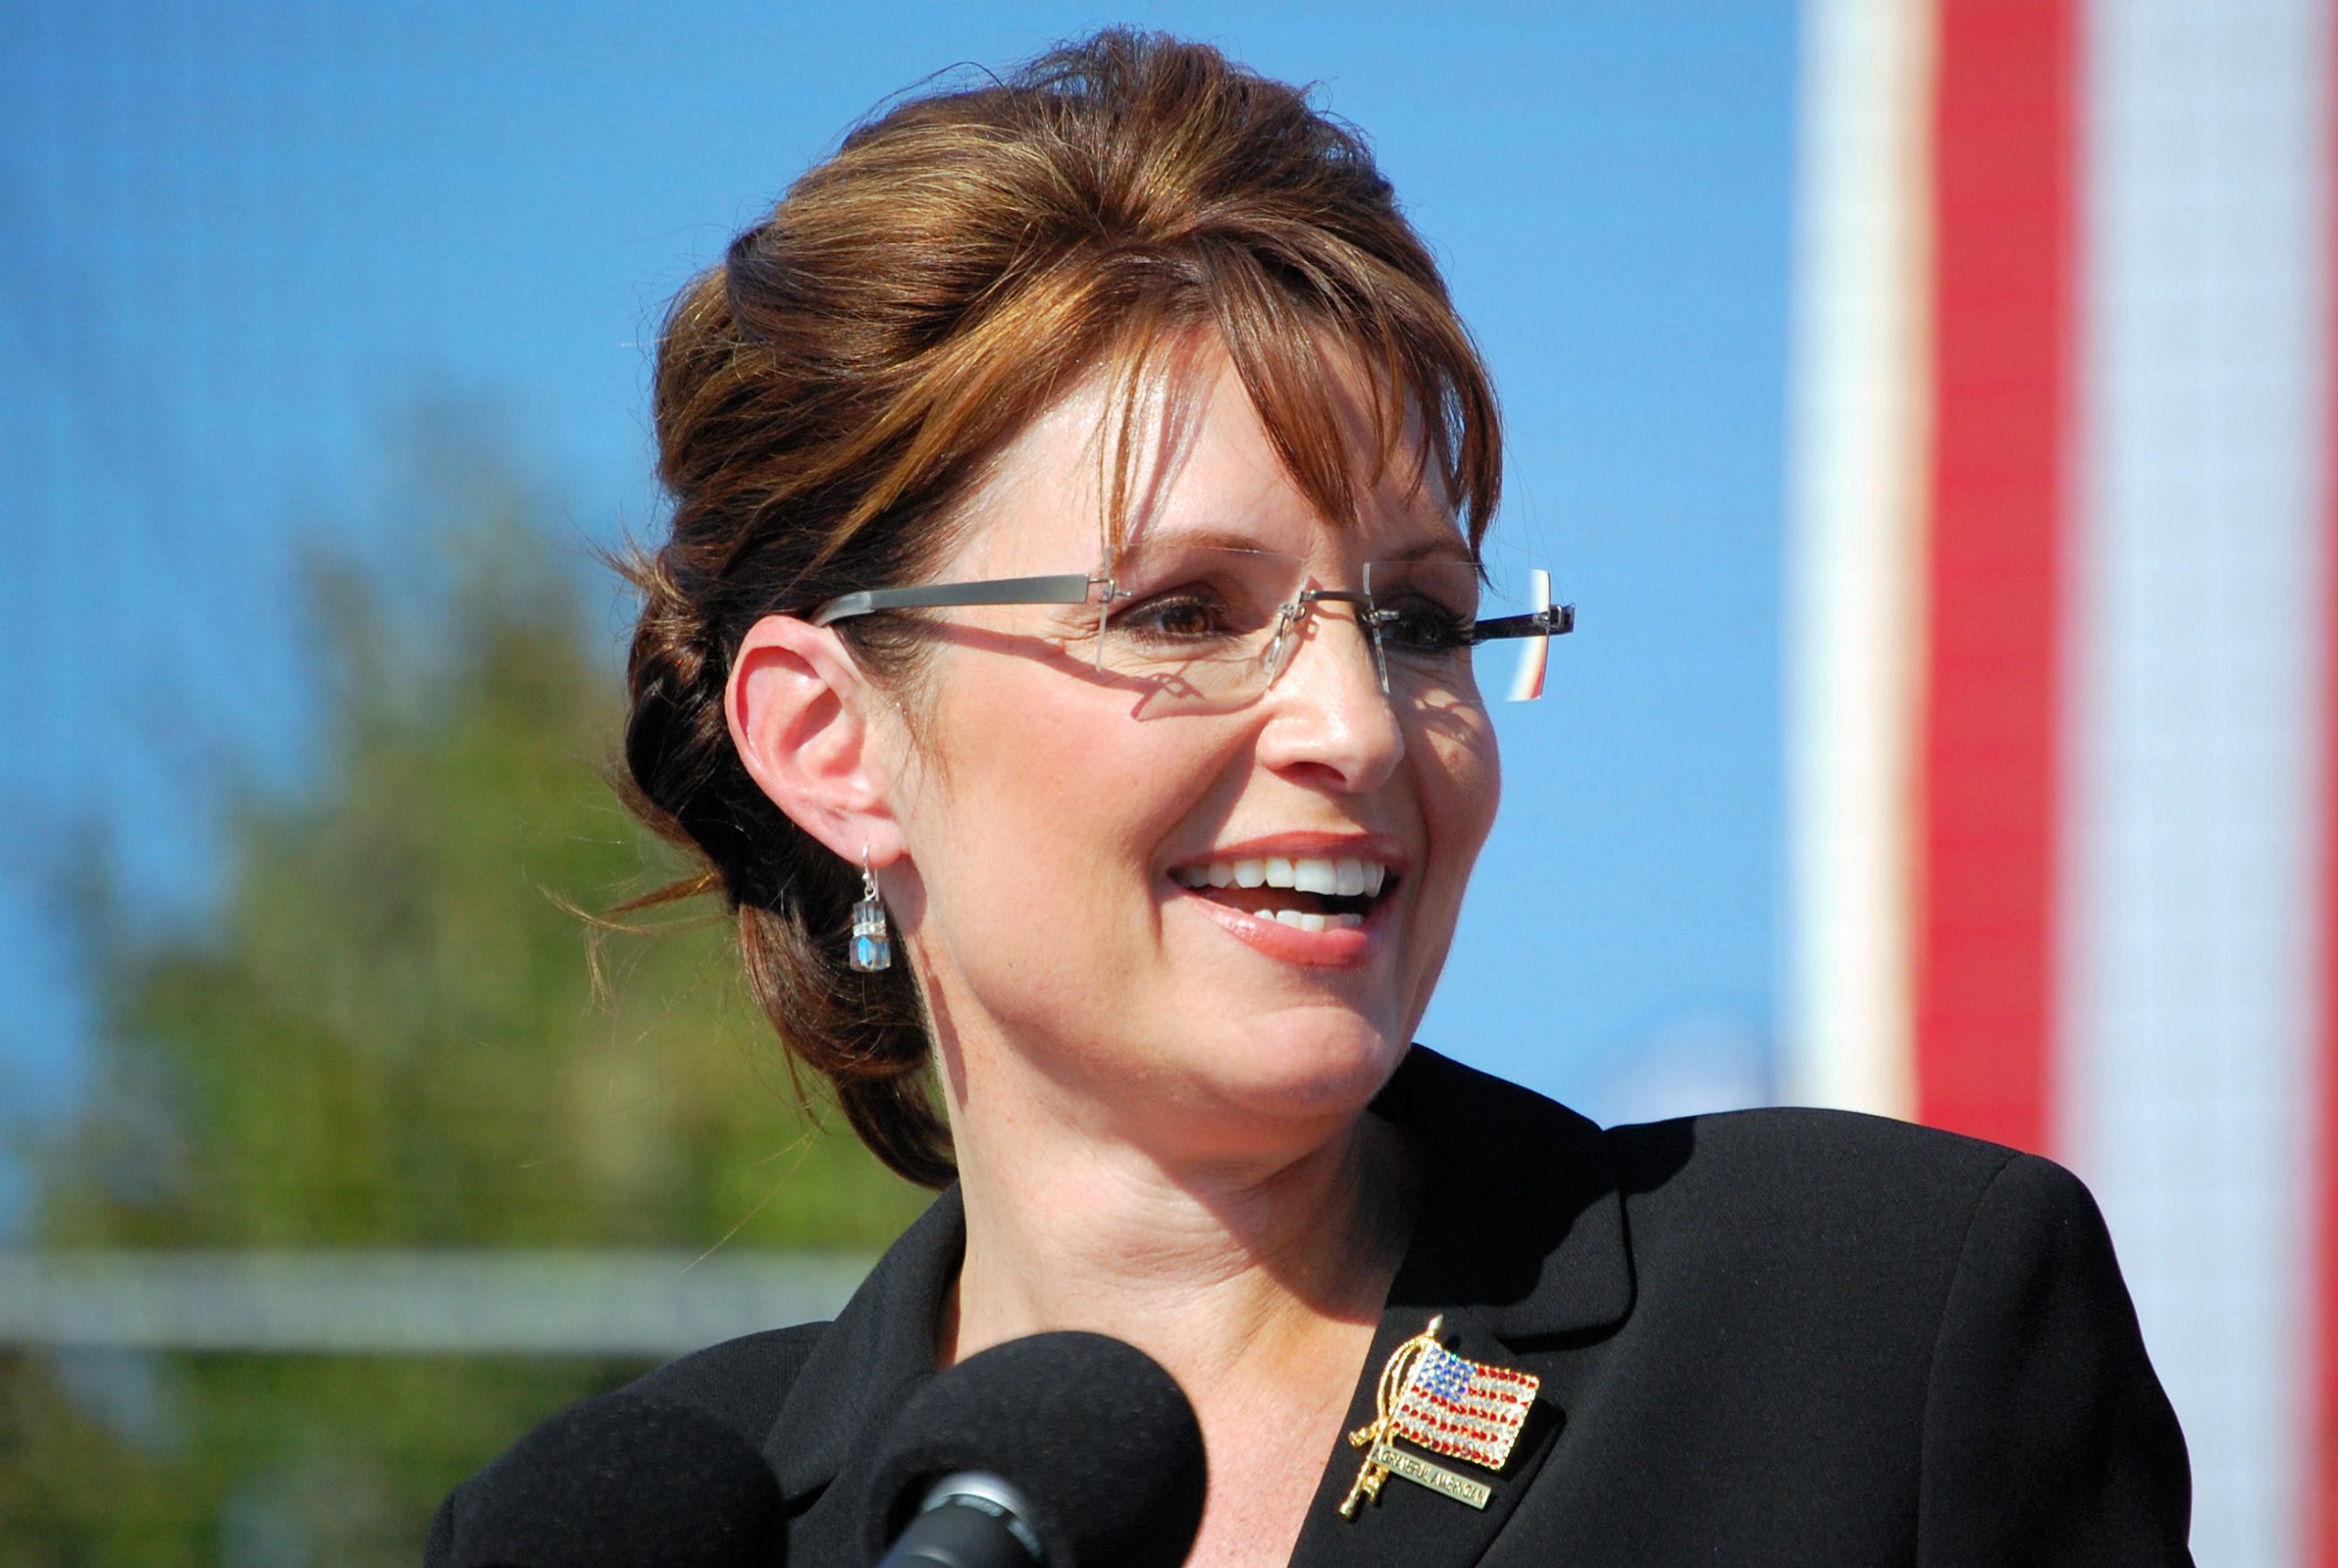 Sarah-Palin-scaled.jpg